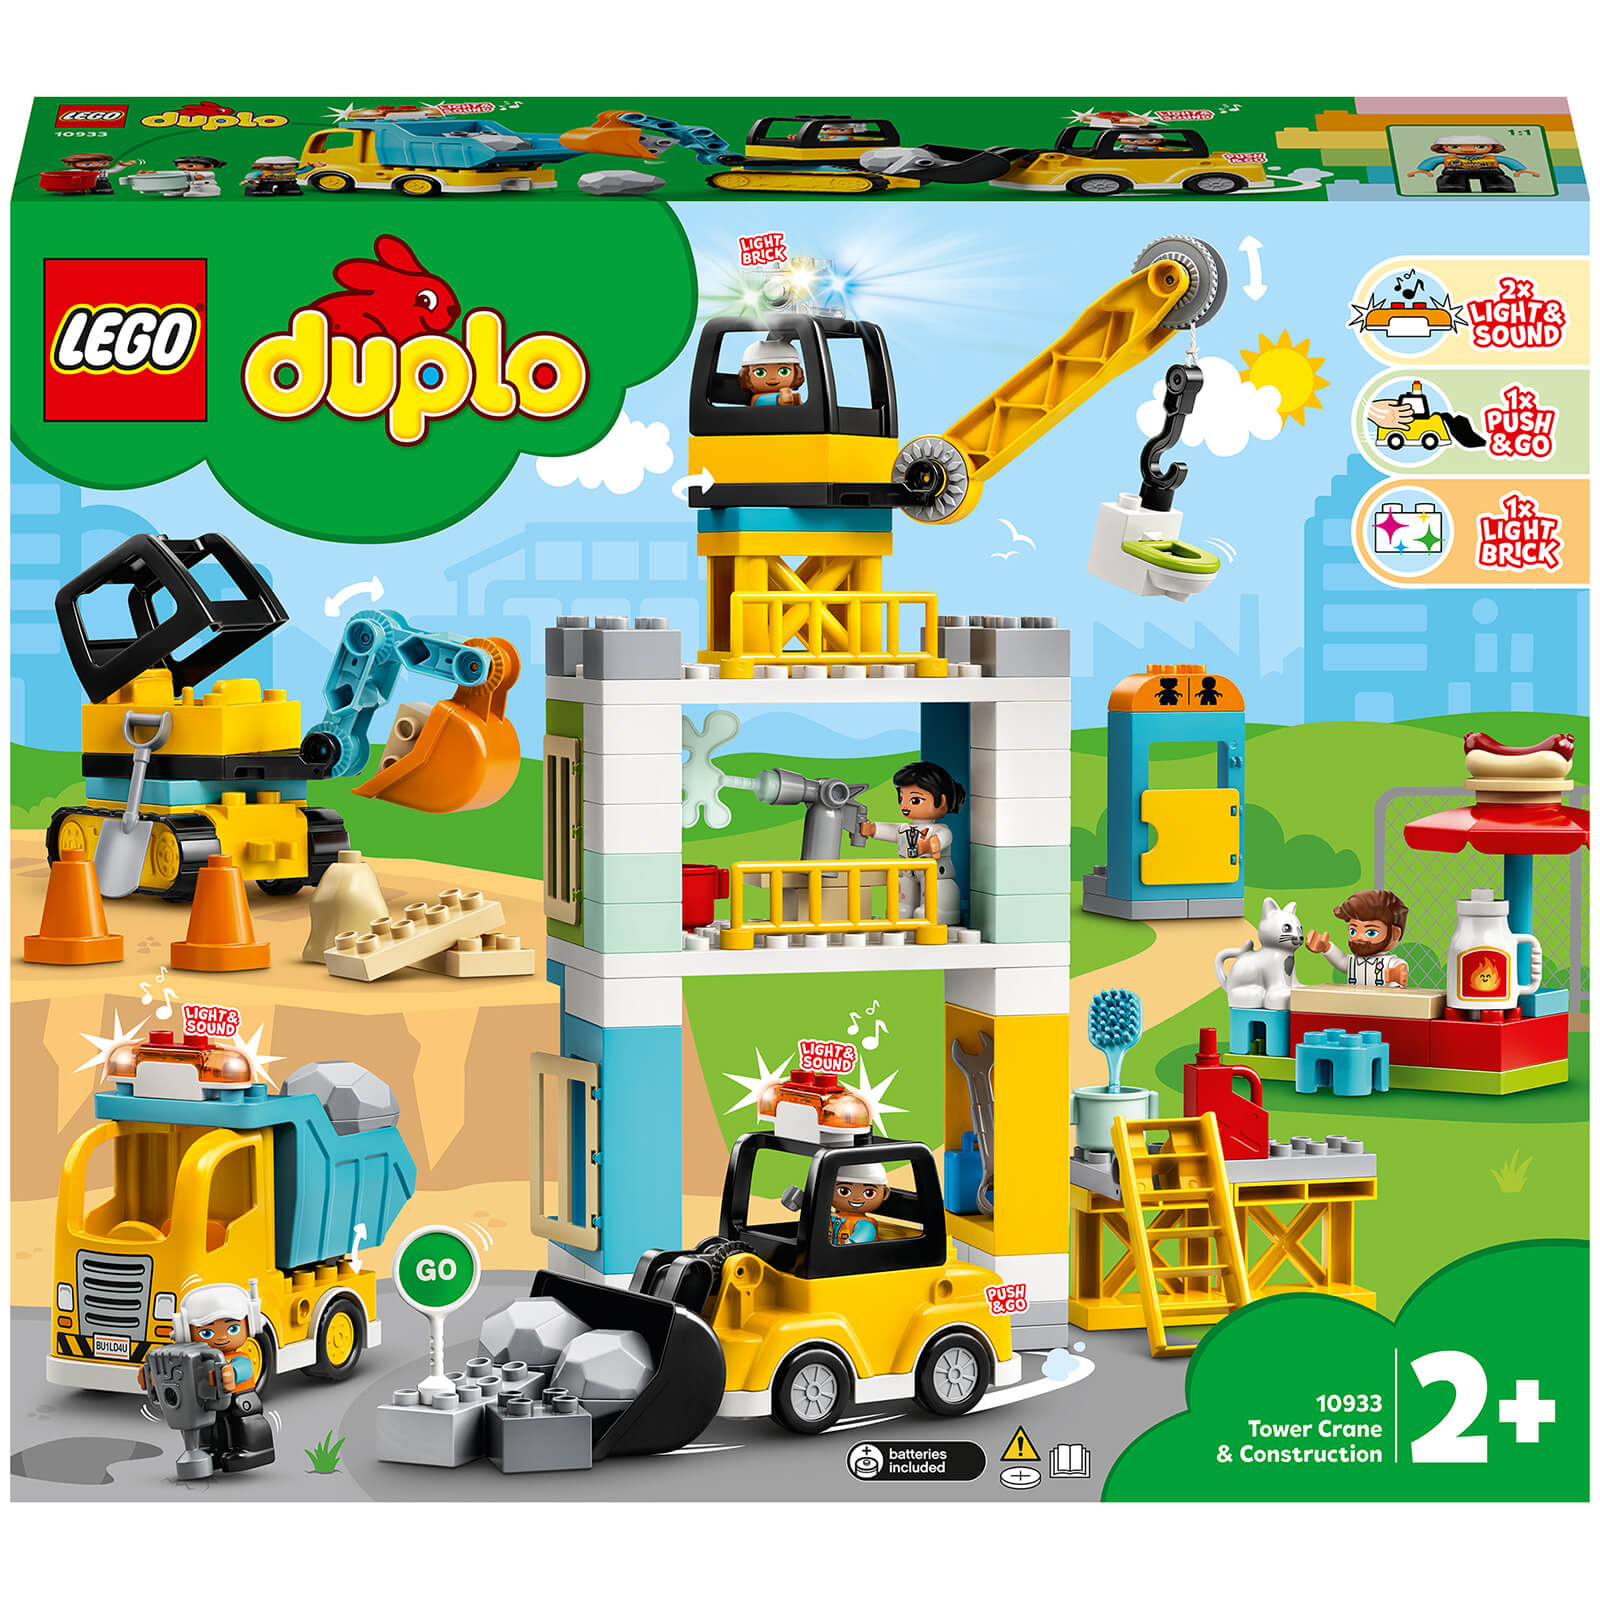 Lego DUPLO Tower Crane & Construction Vehicle Toys (10933)-unisex